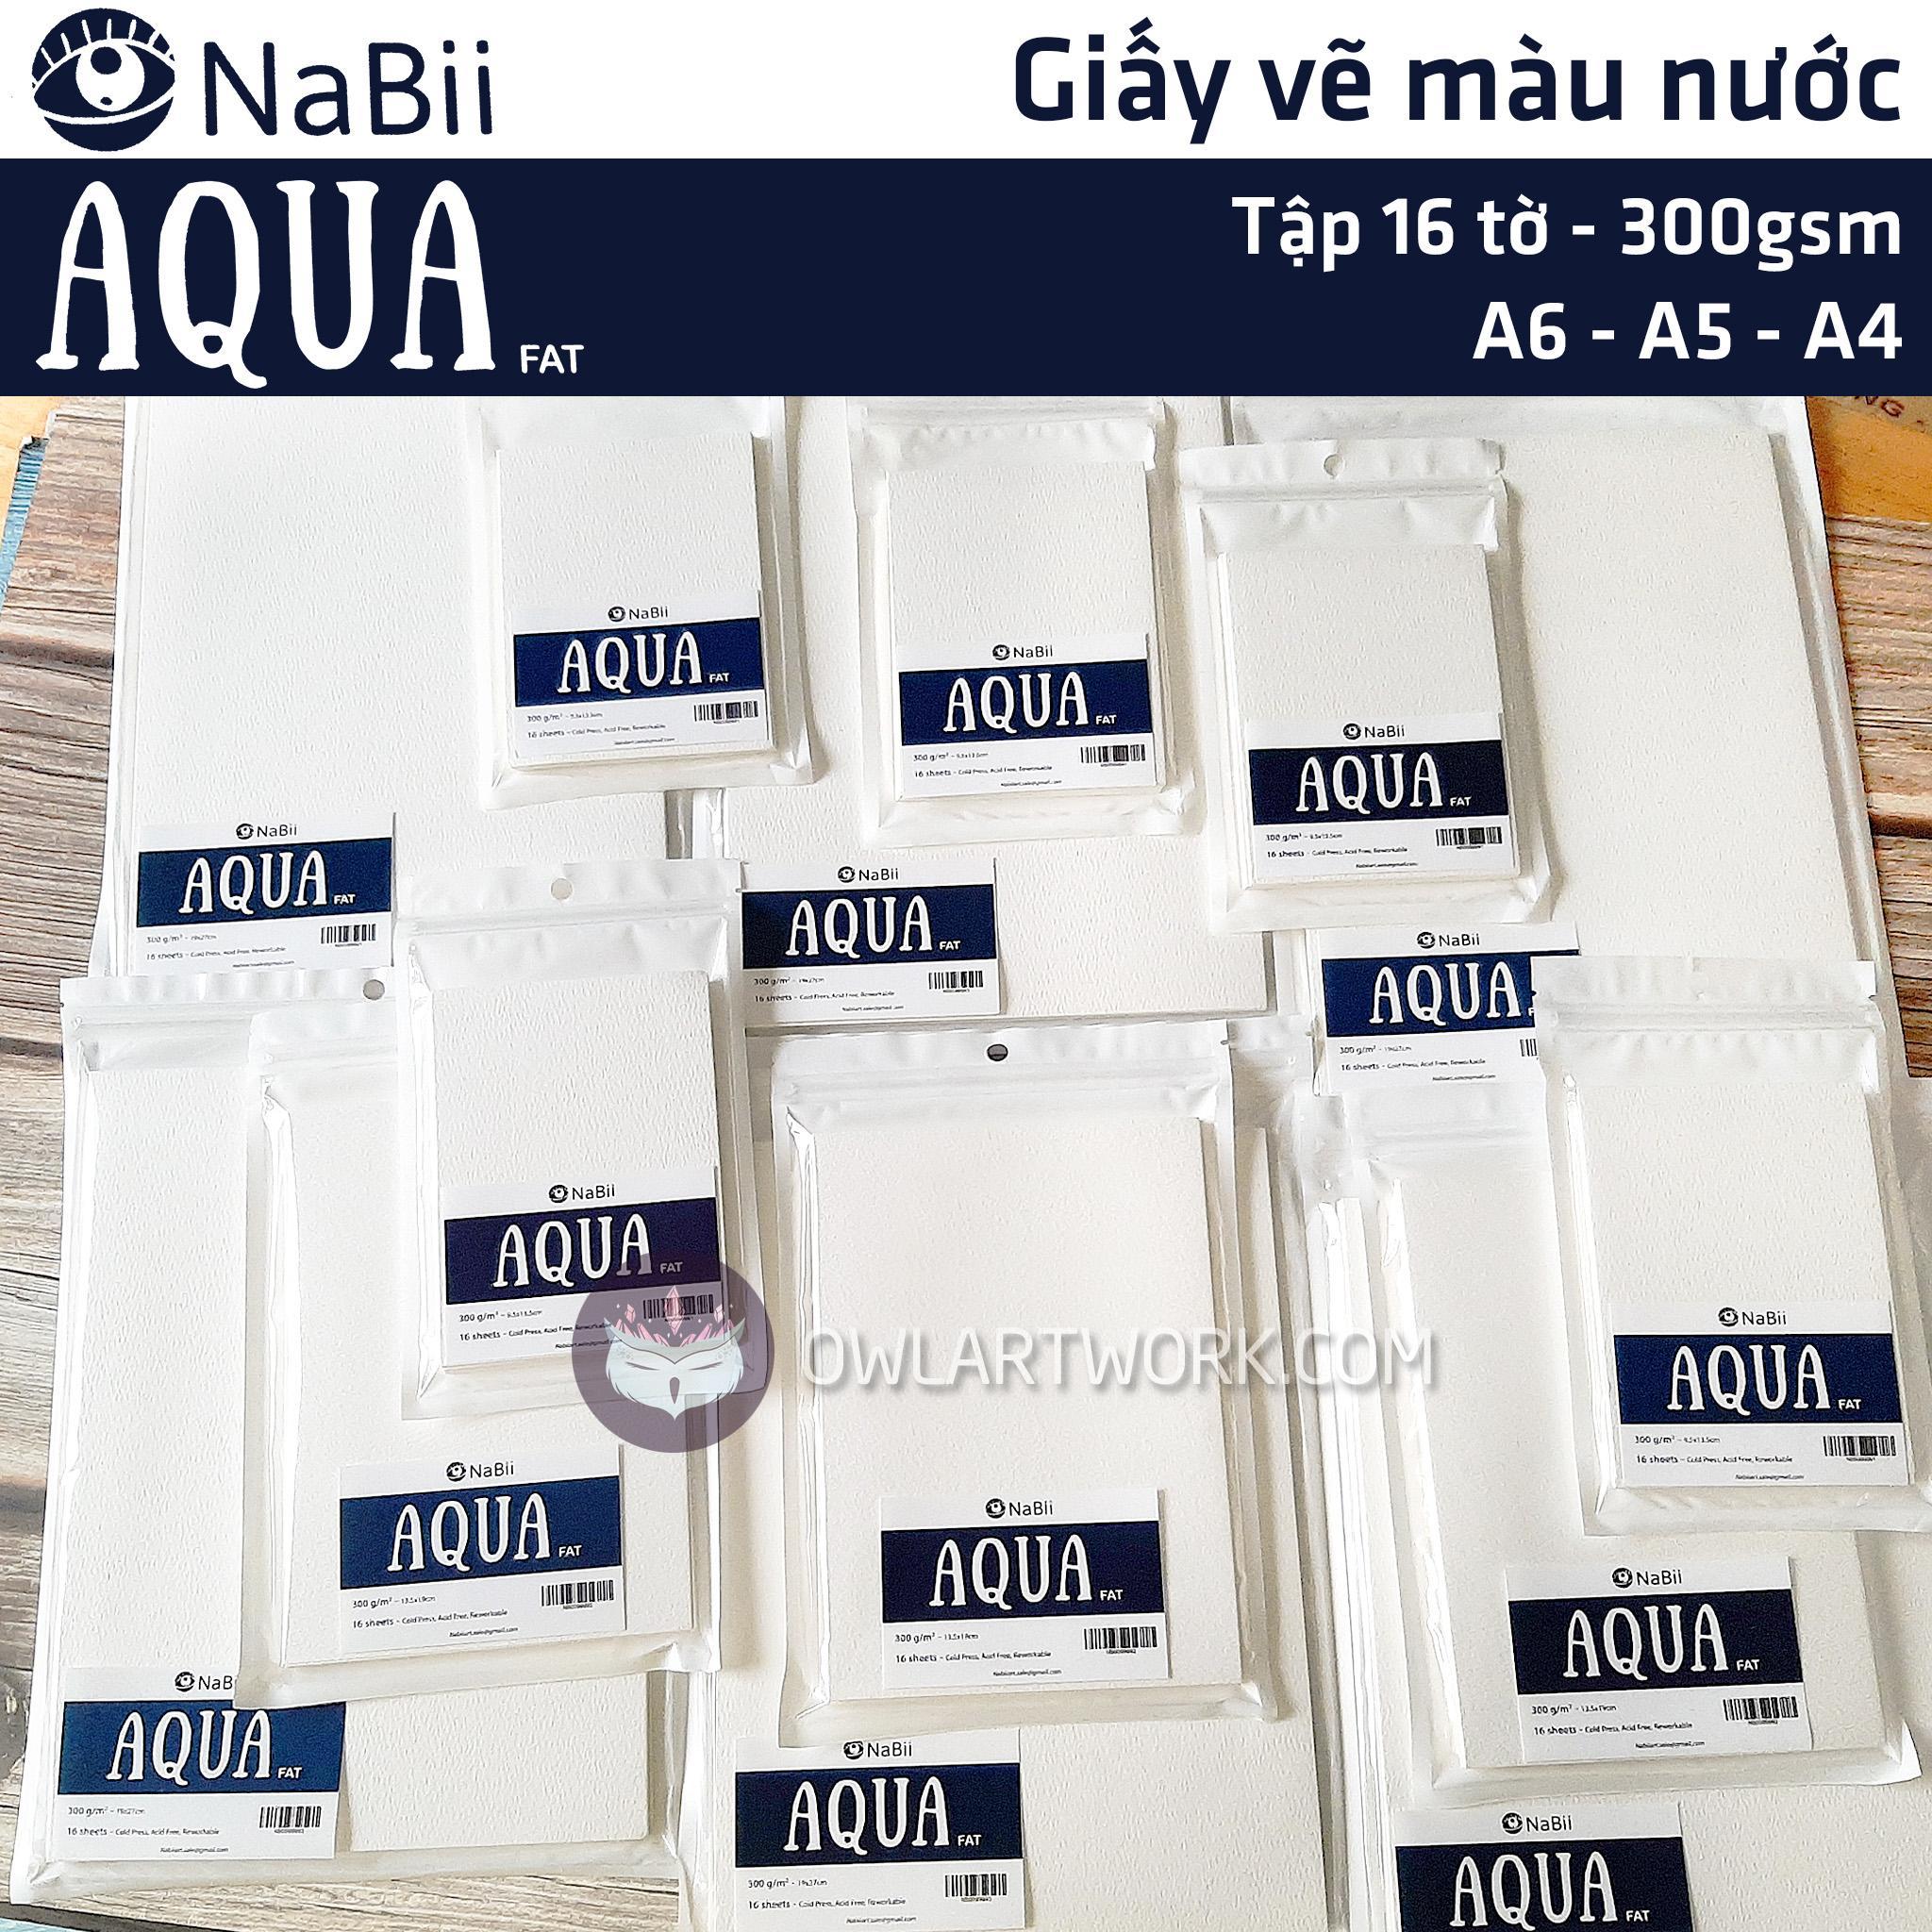 Giấy Nabii Aqua Fat vẽ màu nước 300gsm 16 tờ – Tập lẻ